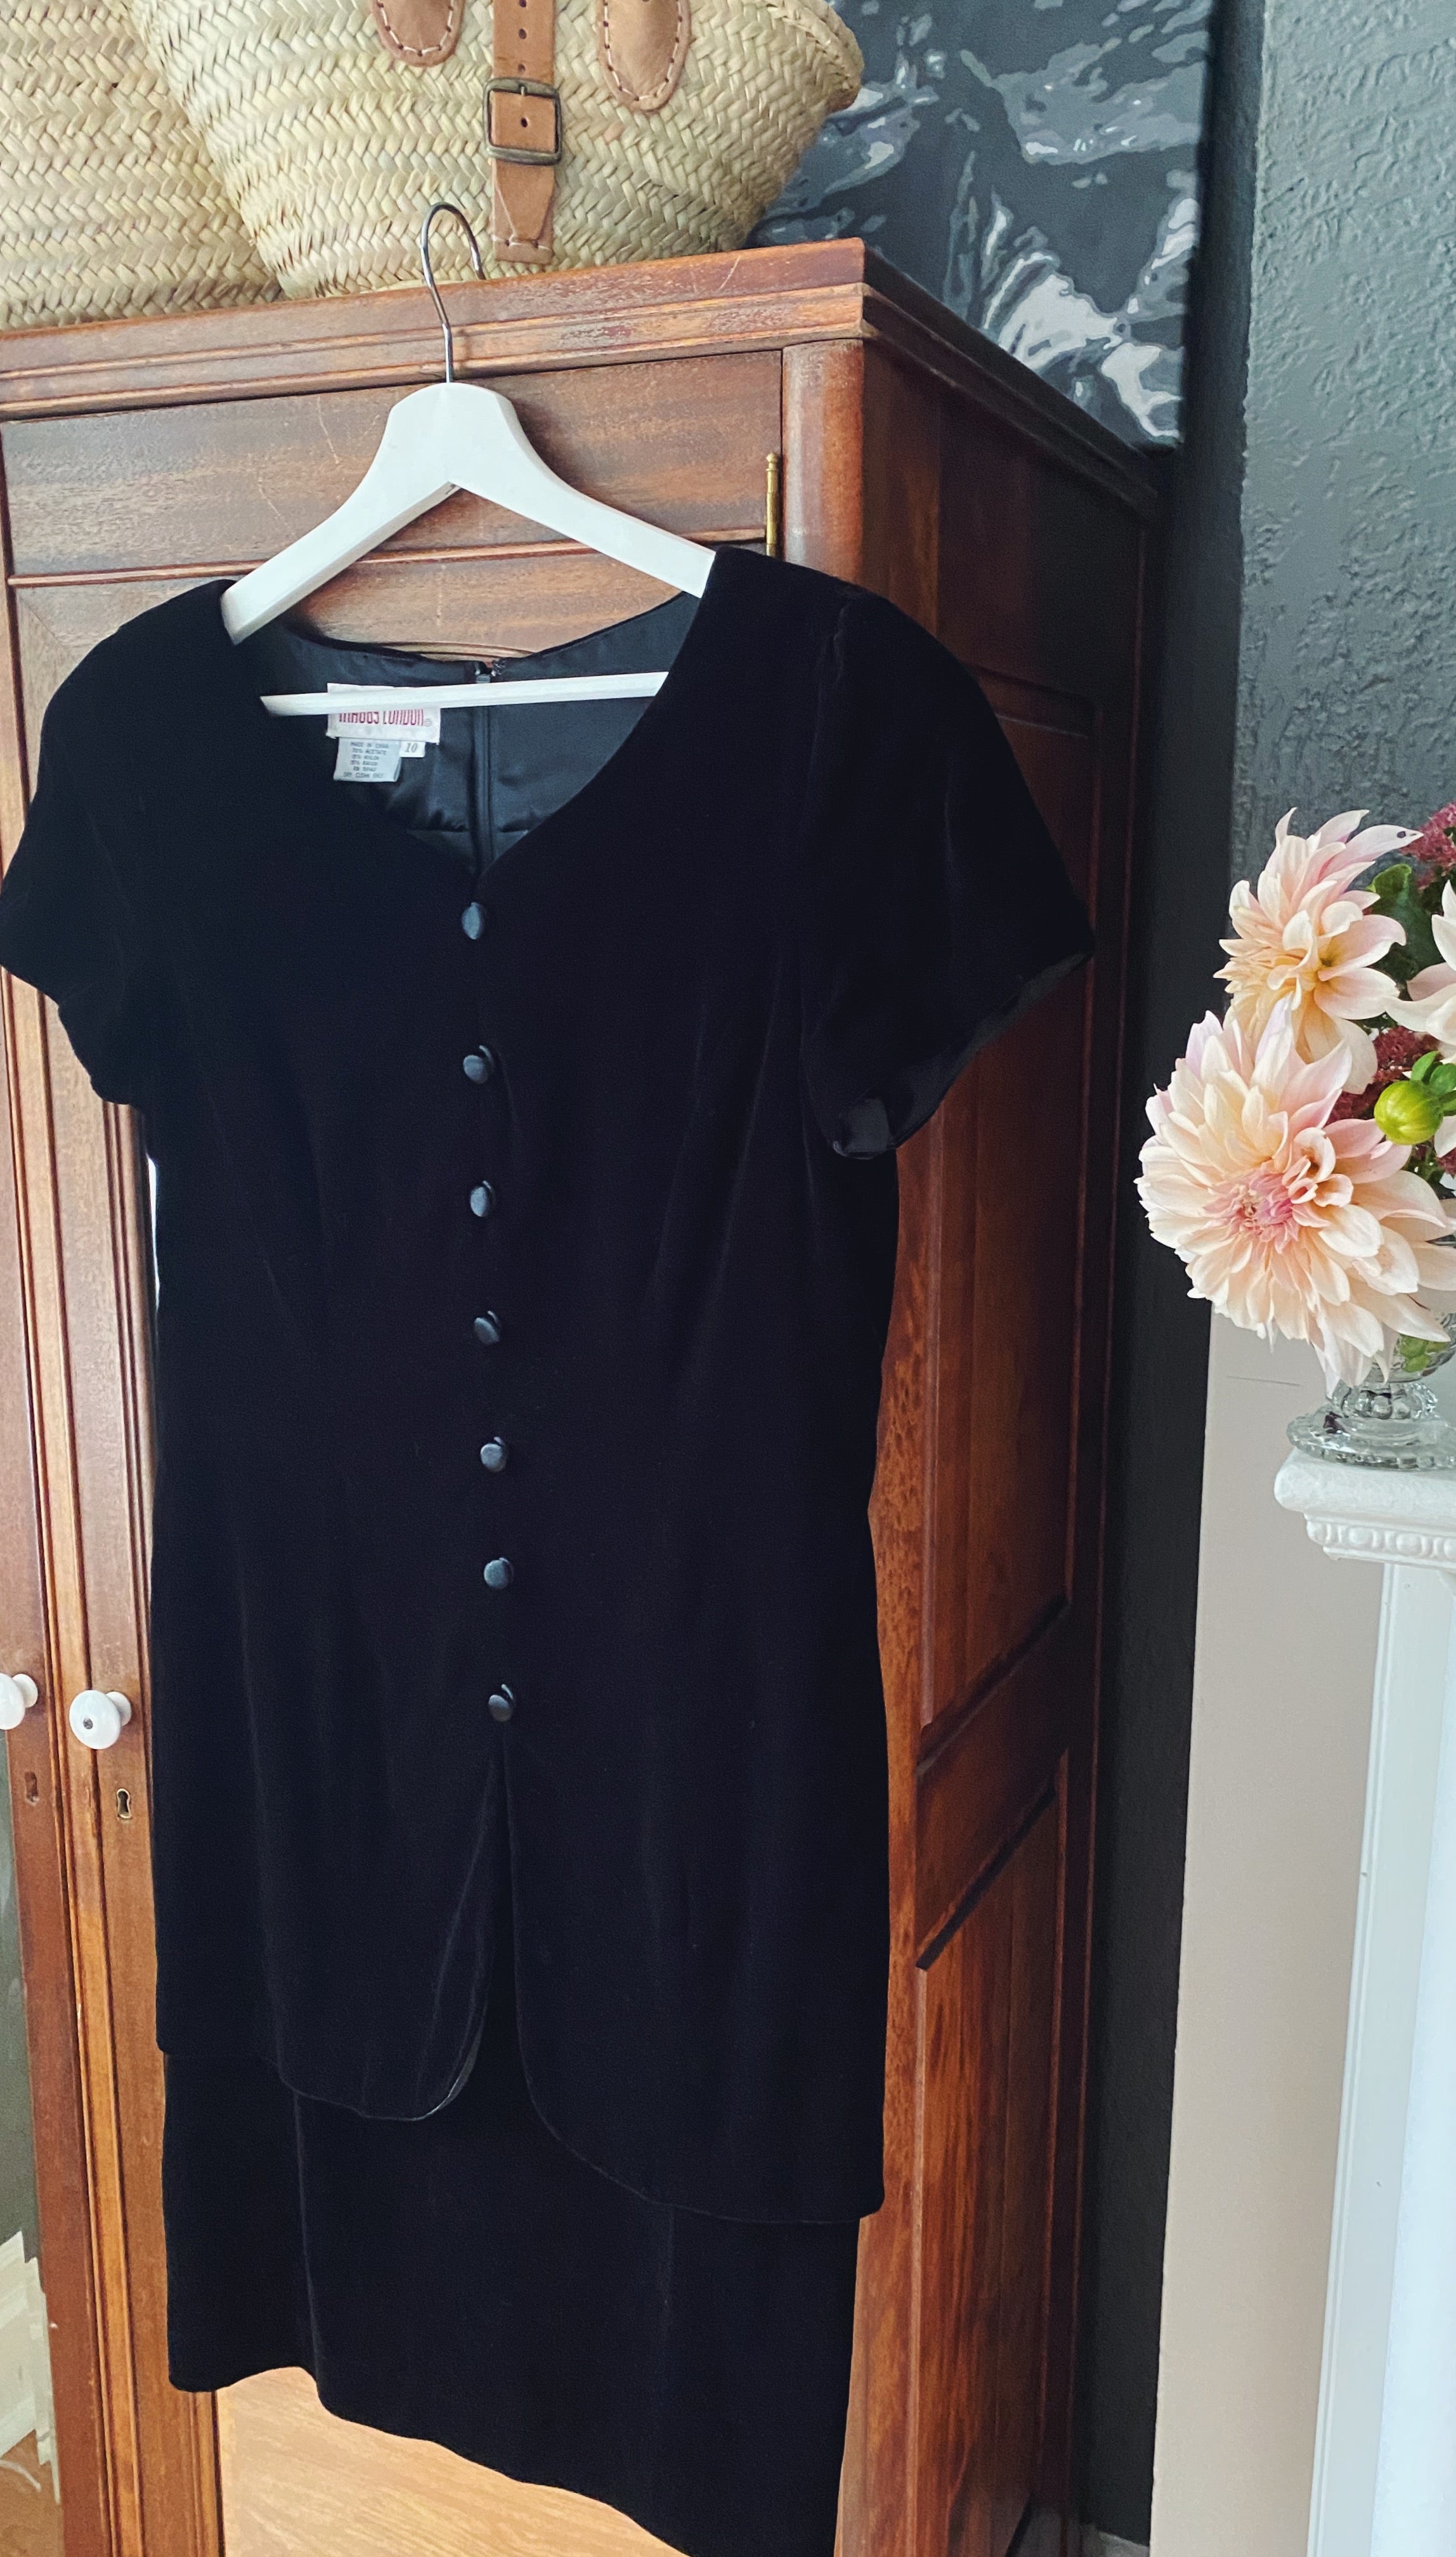 90s Black Velvet Fitted Midi Dress